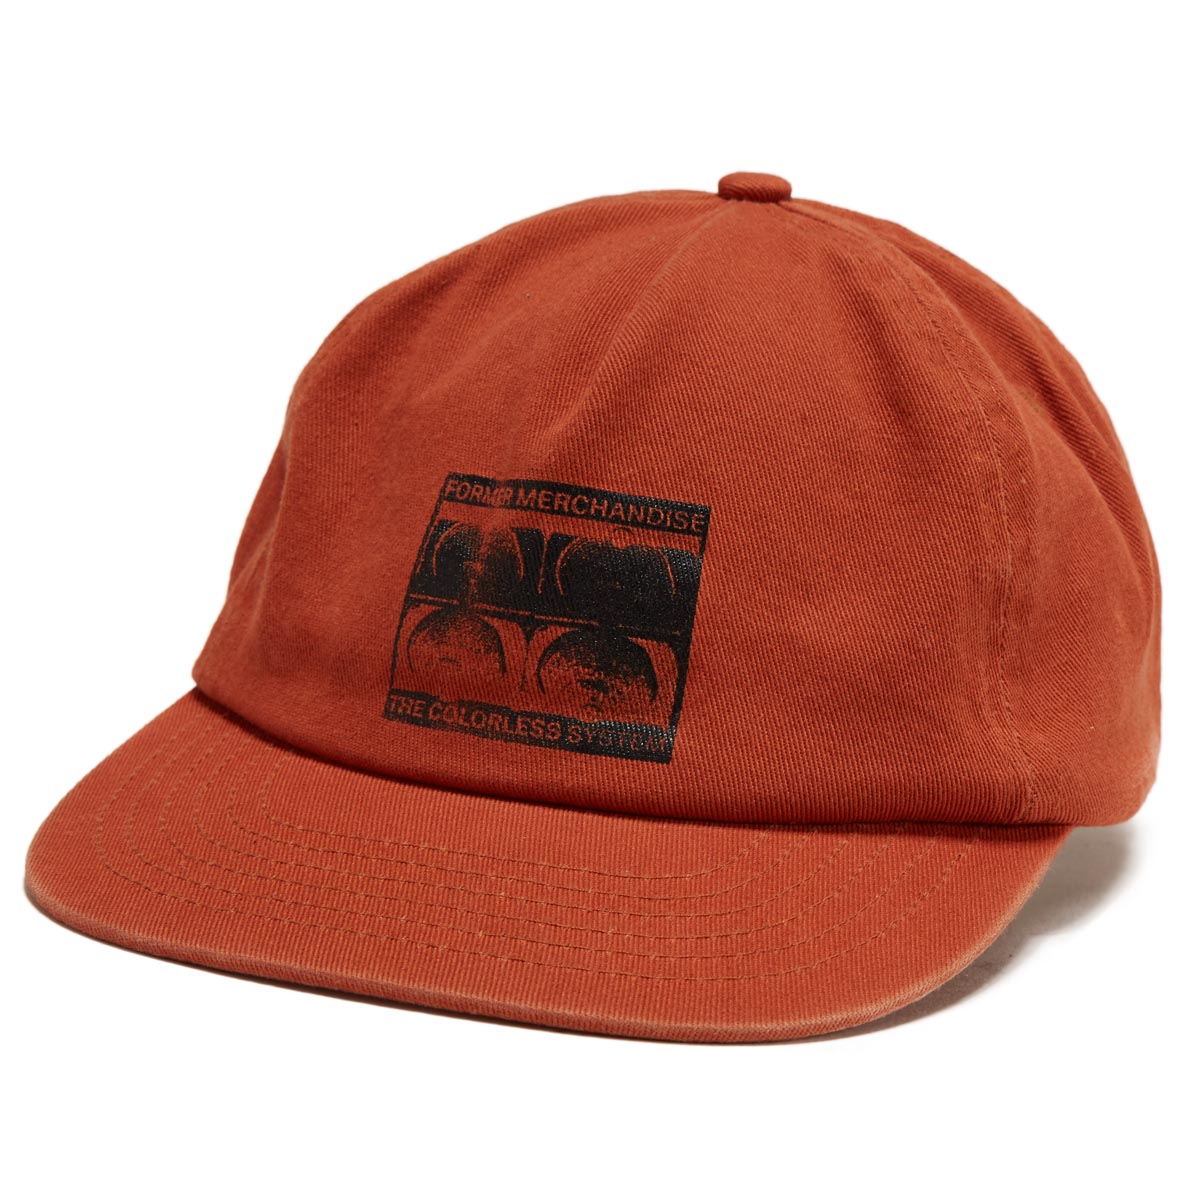 Former Crux Scan Hat - Orange image 1